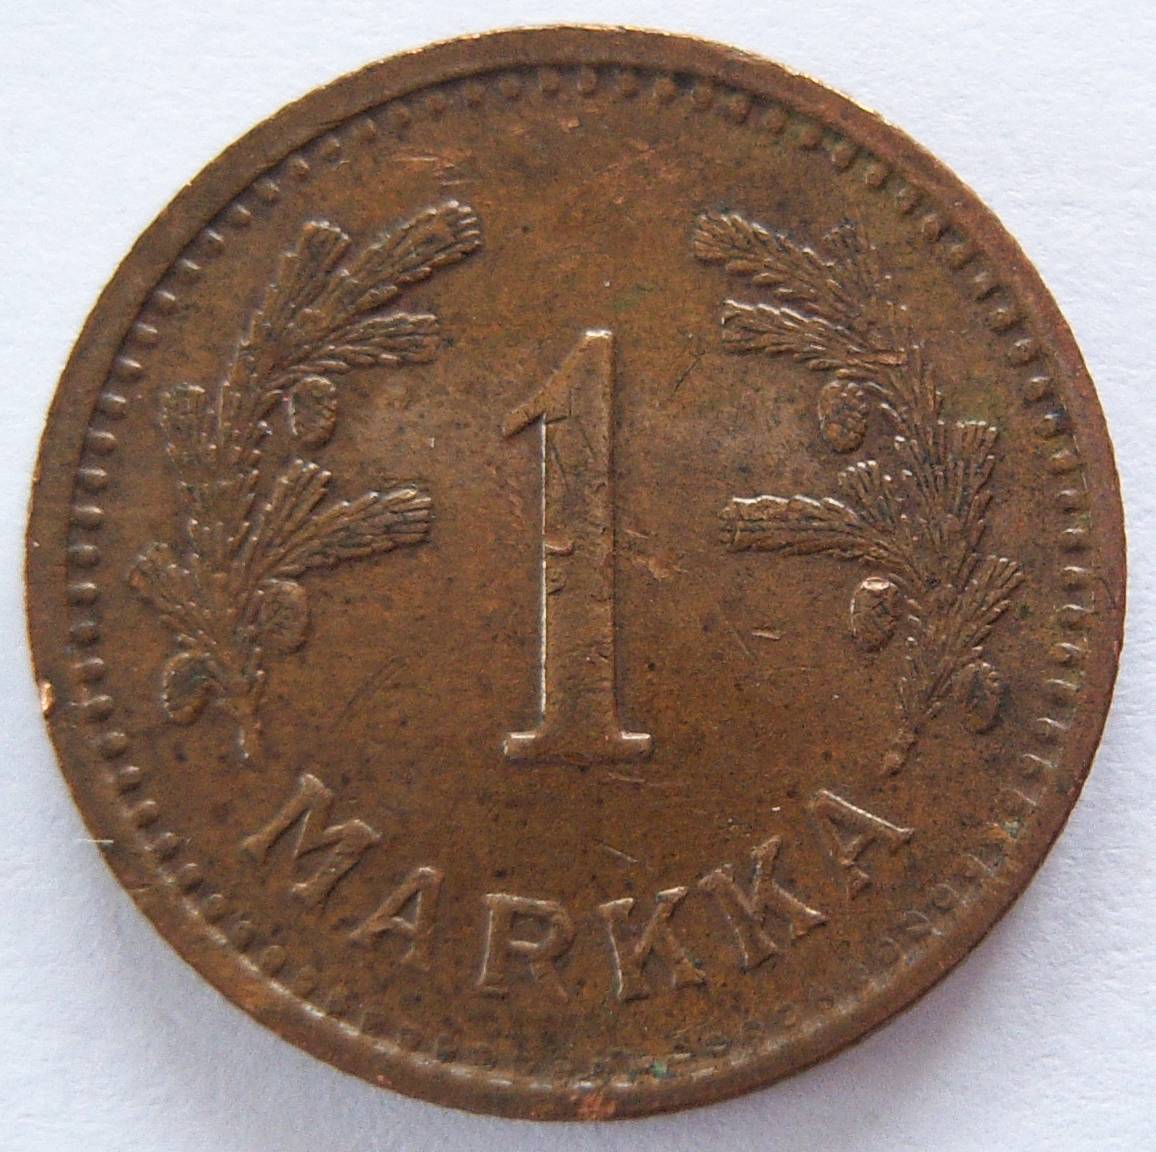  Finnland 1 Markka 1942   